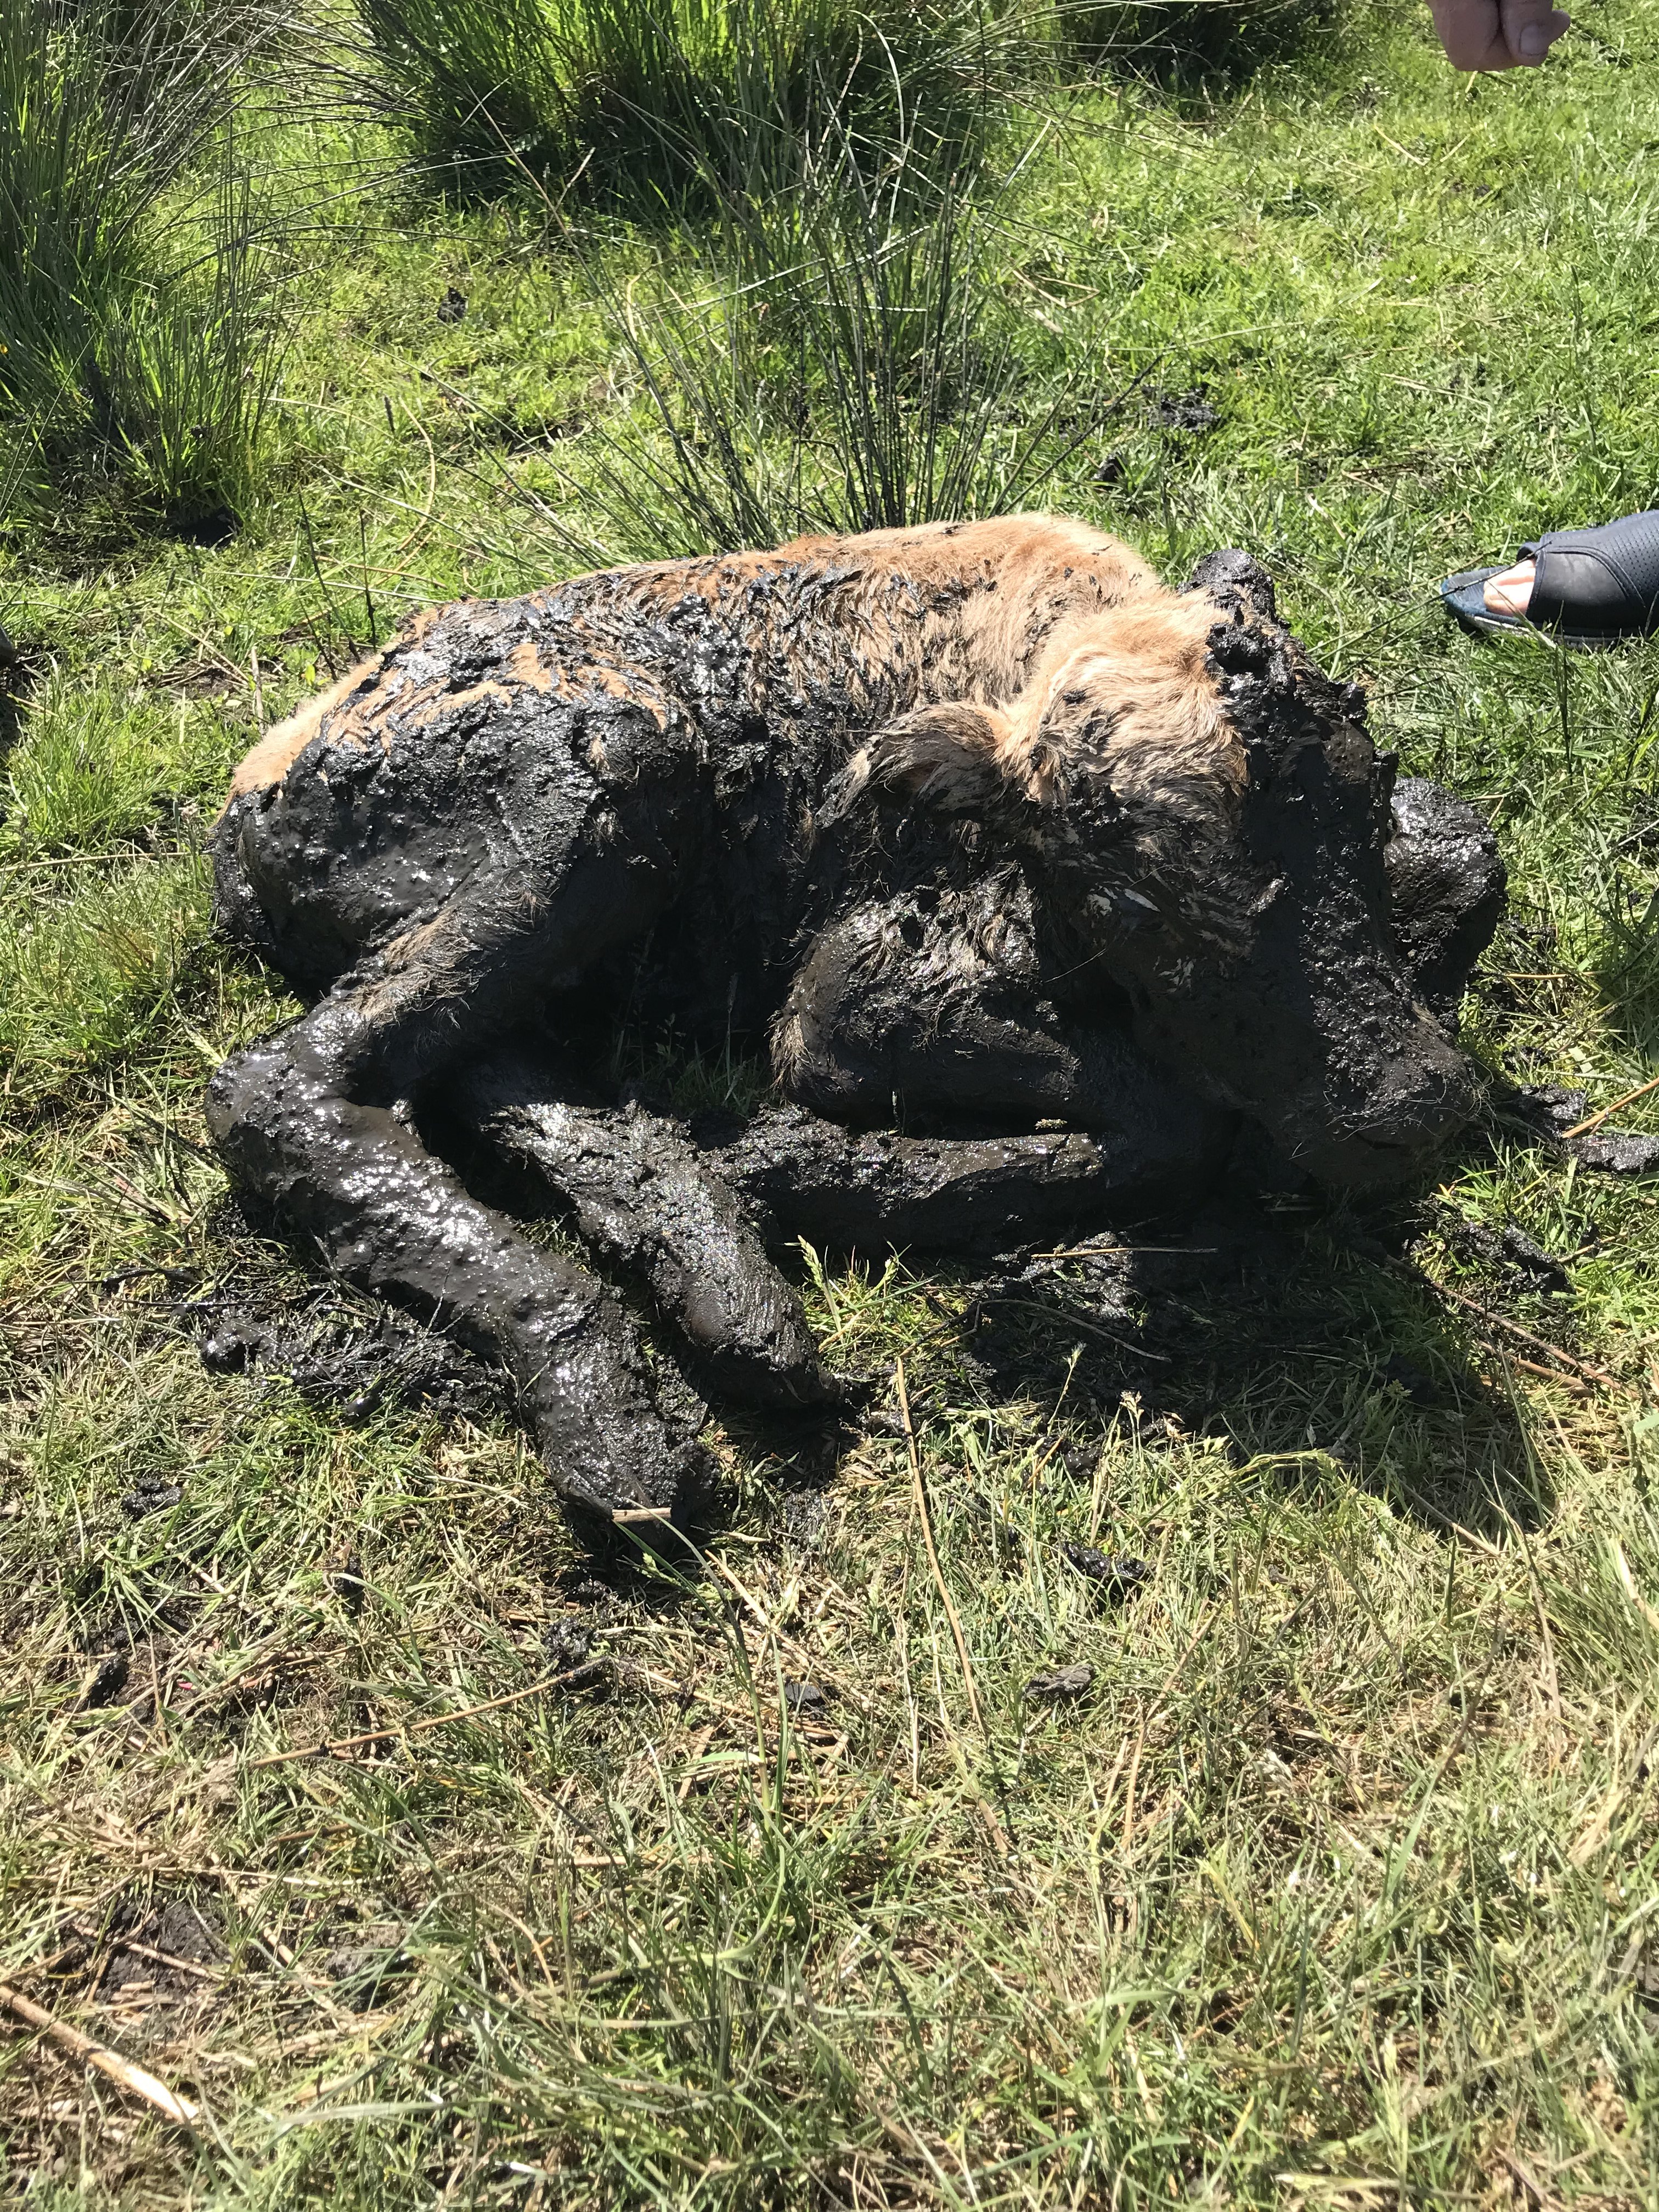 A calf covered in mud